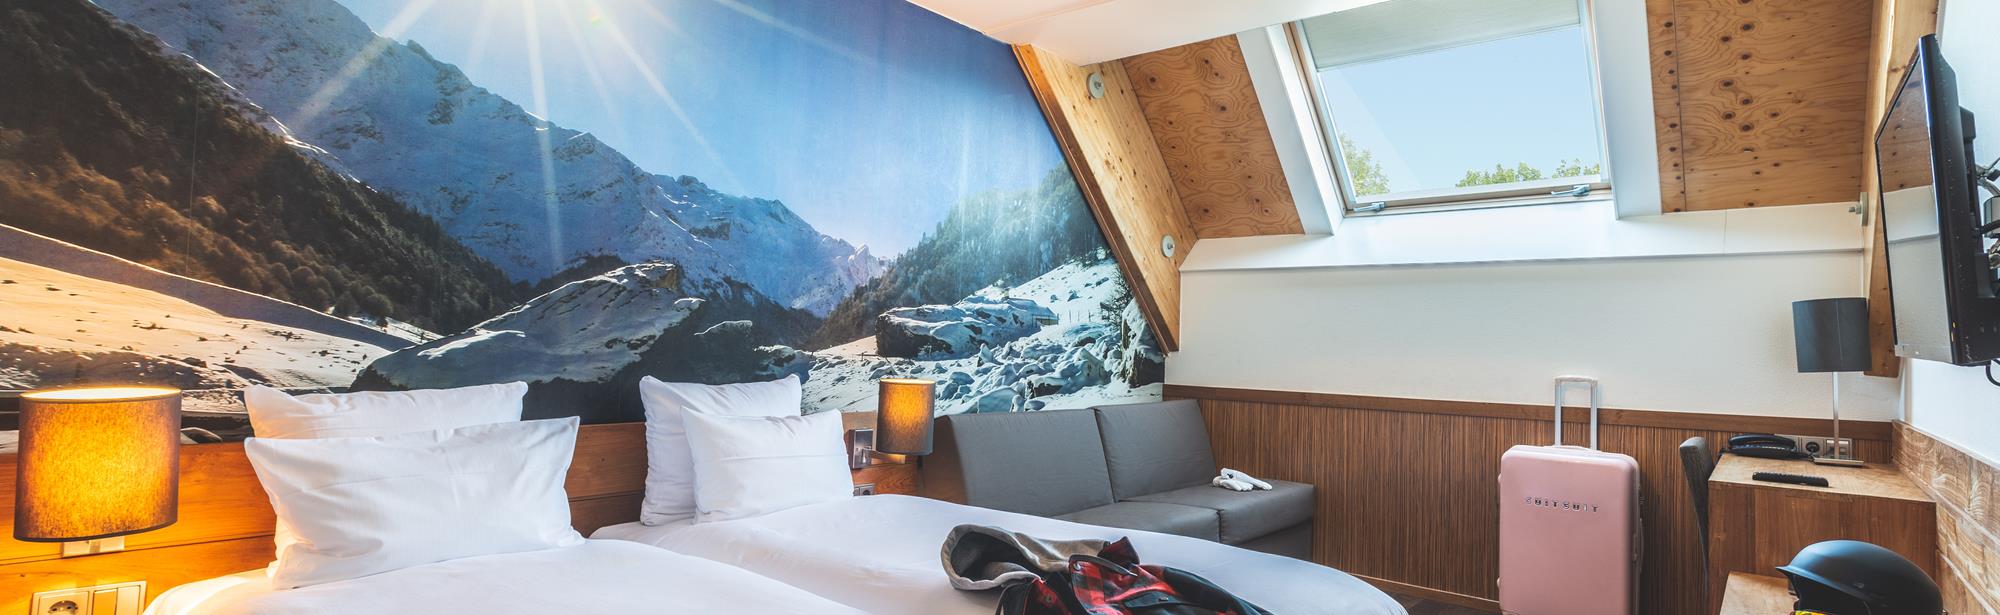 Alpine Hotel SnowWorld